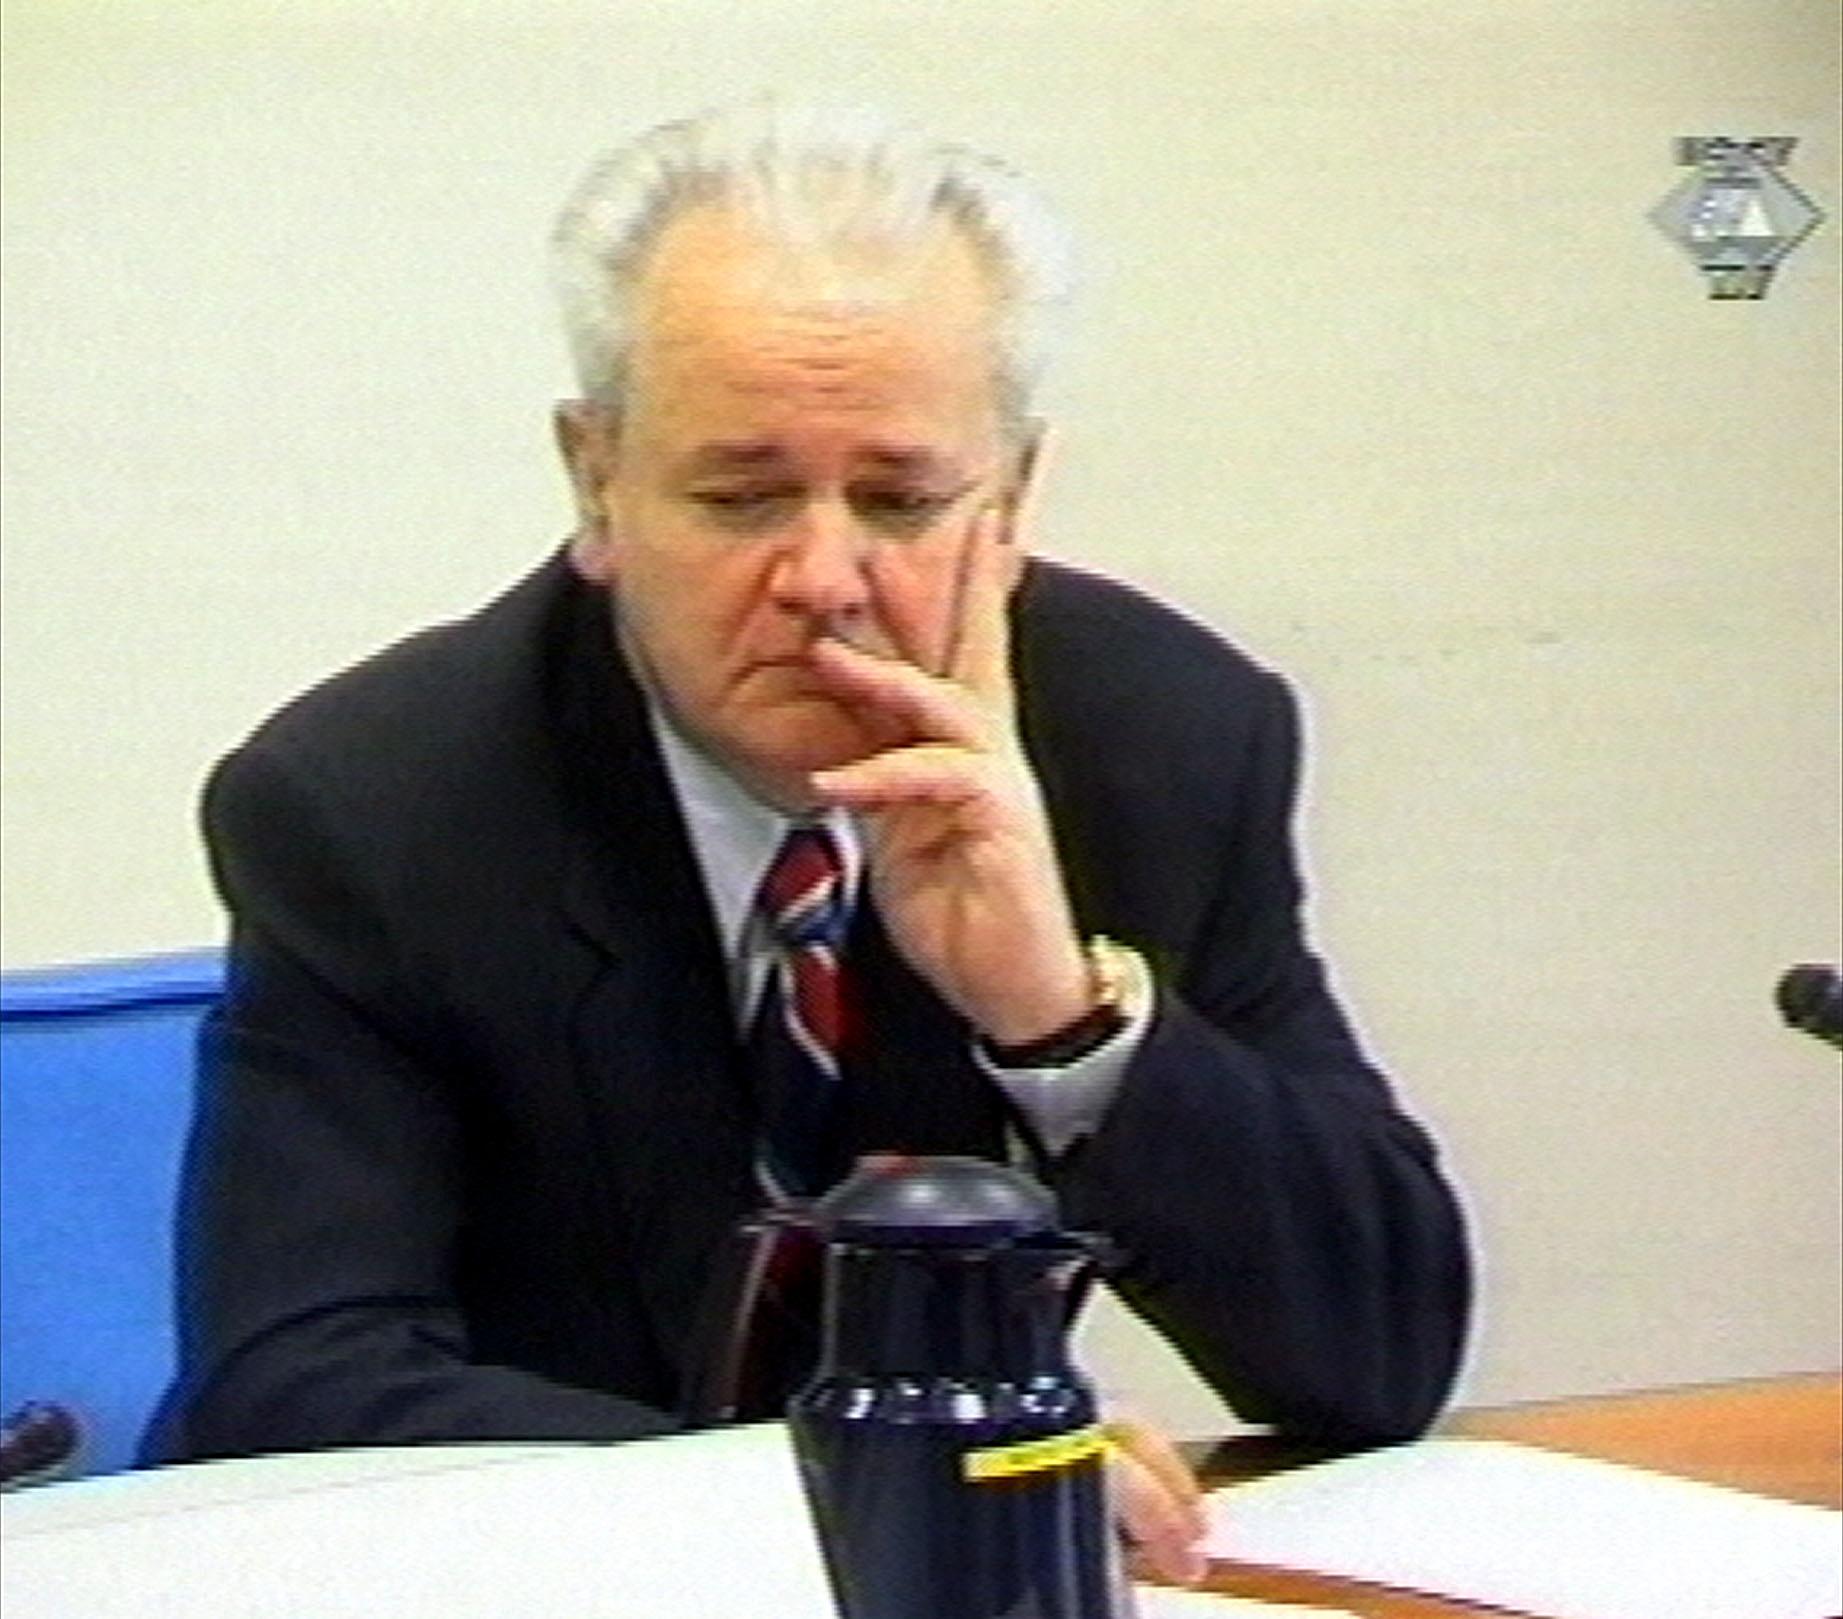 Serbiens tidigare ledare Slobodan Milosevic inför FN-domstol i Haag 2002. Milosevic avled i fängelse under rättegången. Arkivbild.